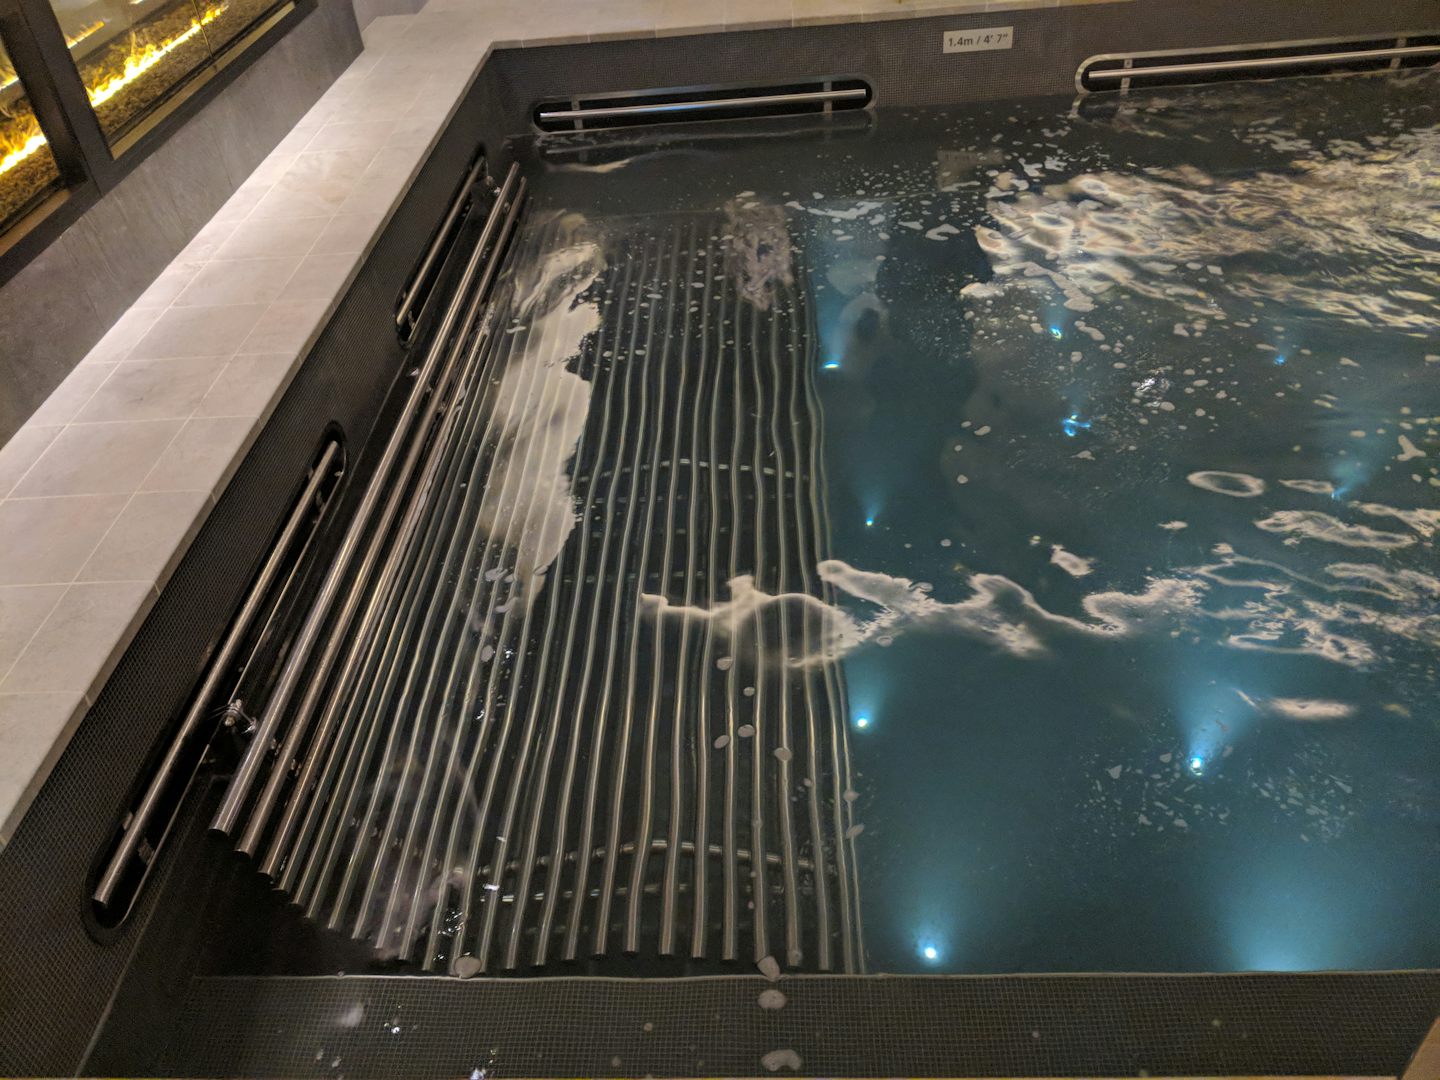 Longer inside giant hot tub in the spa